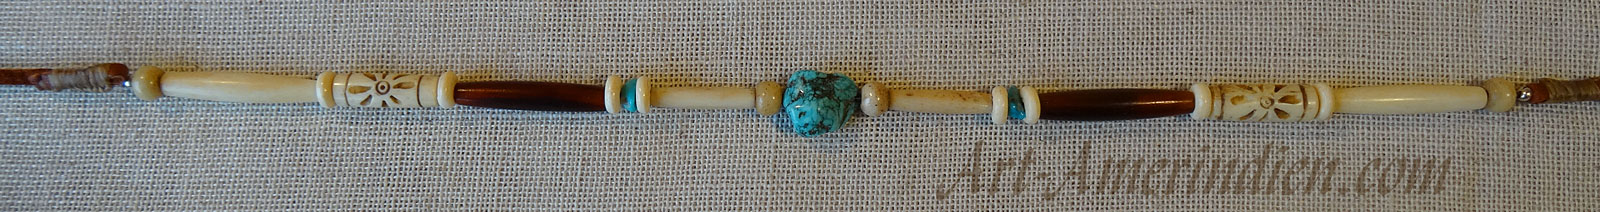 Collier ras de cou ou choker indien en perles d'os et de corne, gemme de turquoise, lacet en cuir.